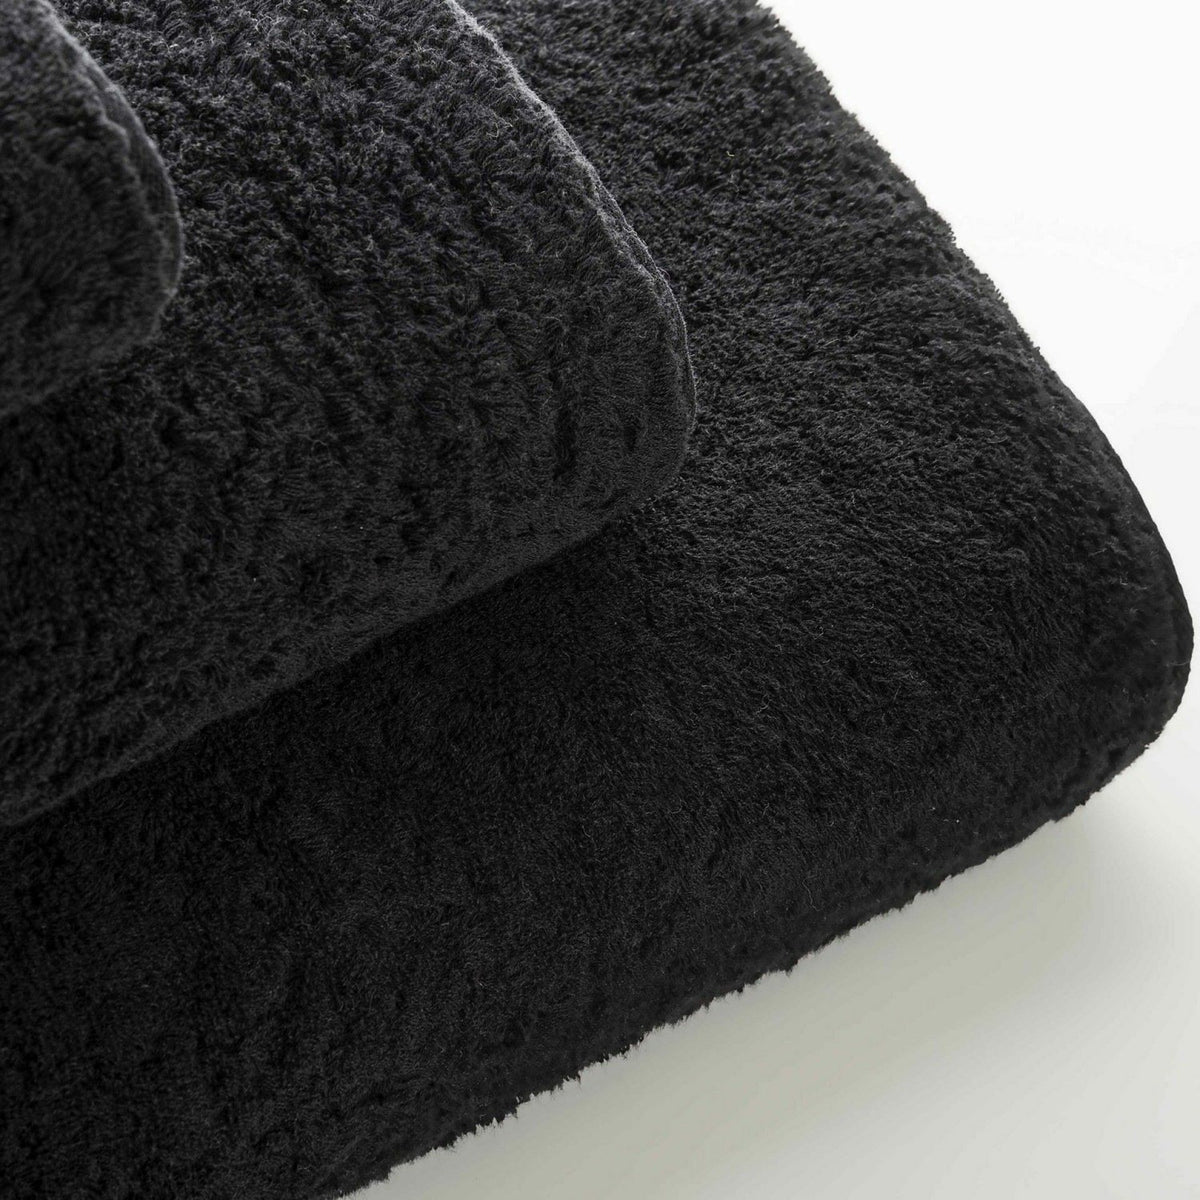 Graccioza Egoist Bath Towel Top Stack Black Fine Linens